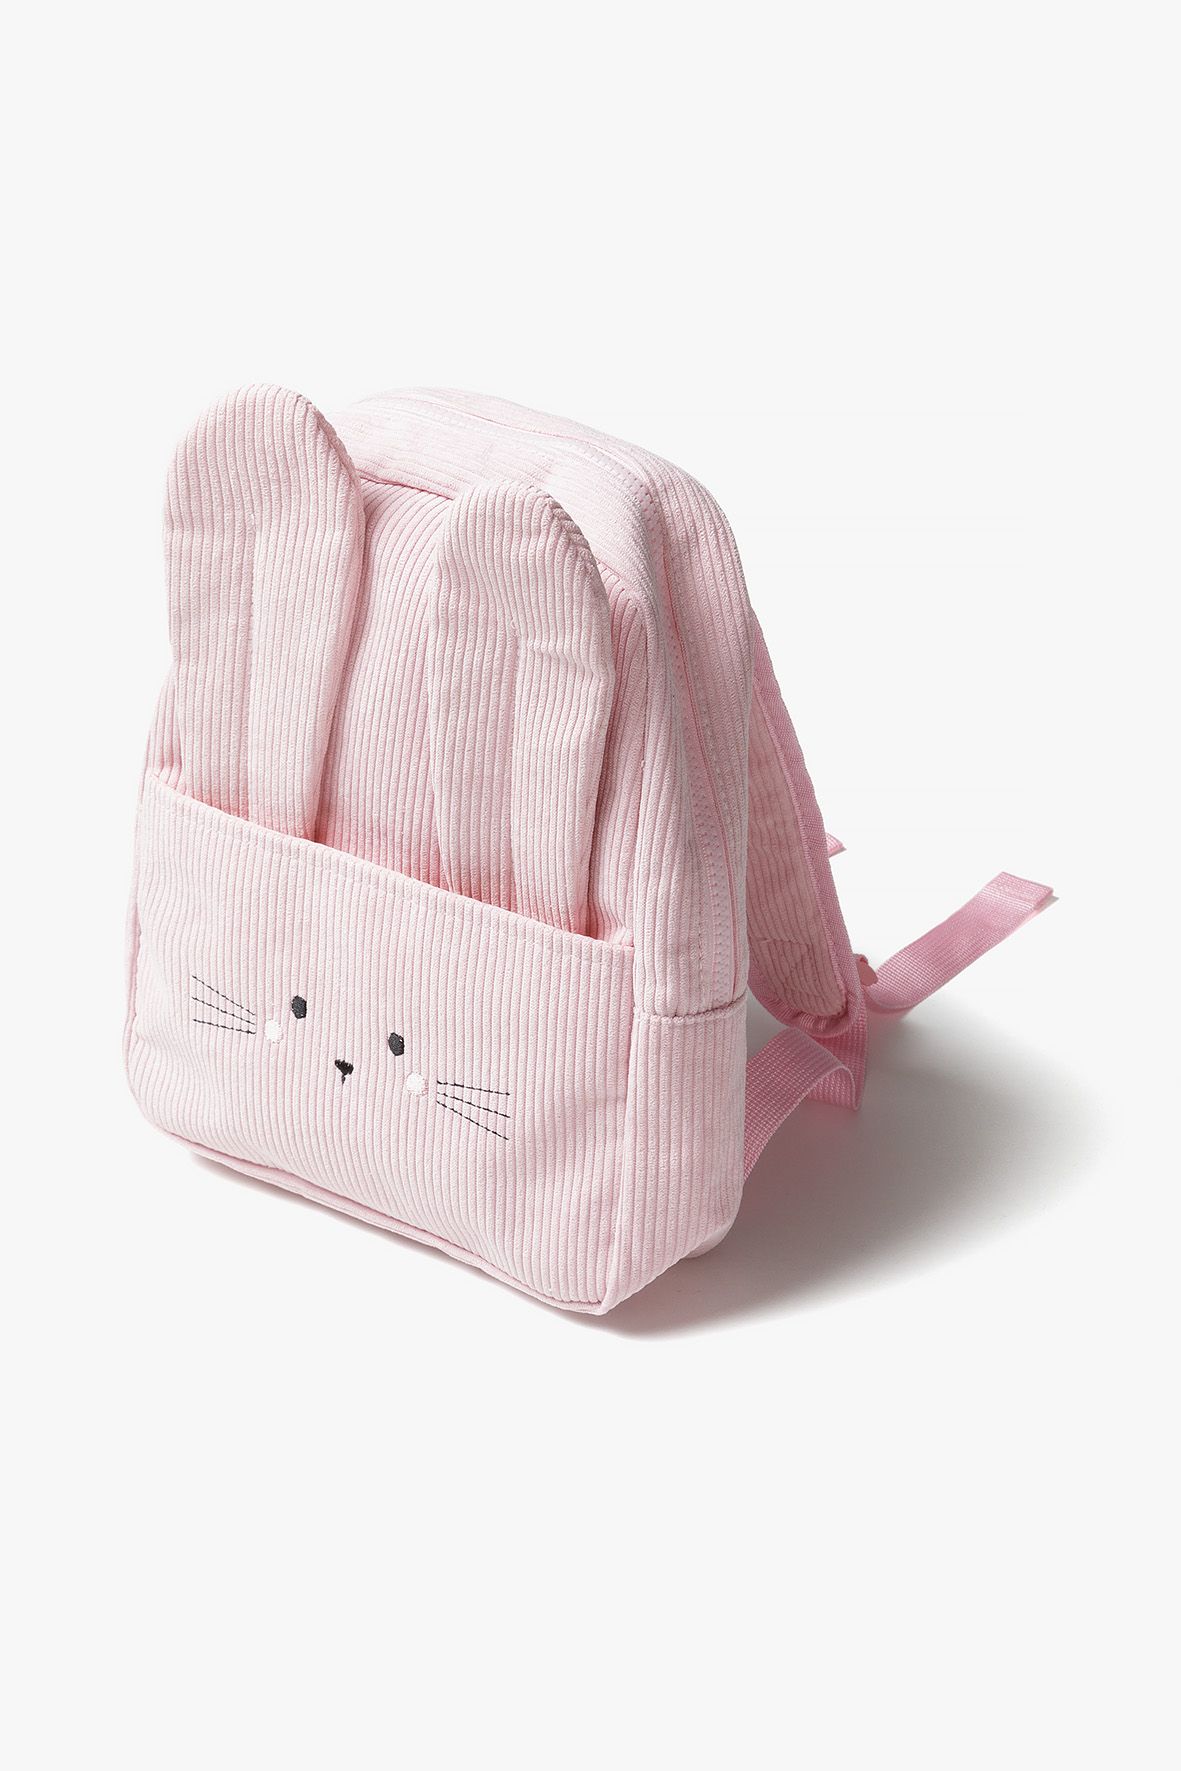 Plecak dla przedszkolaka - Królik